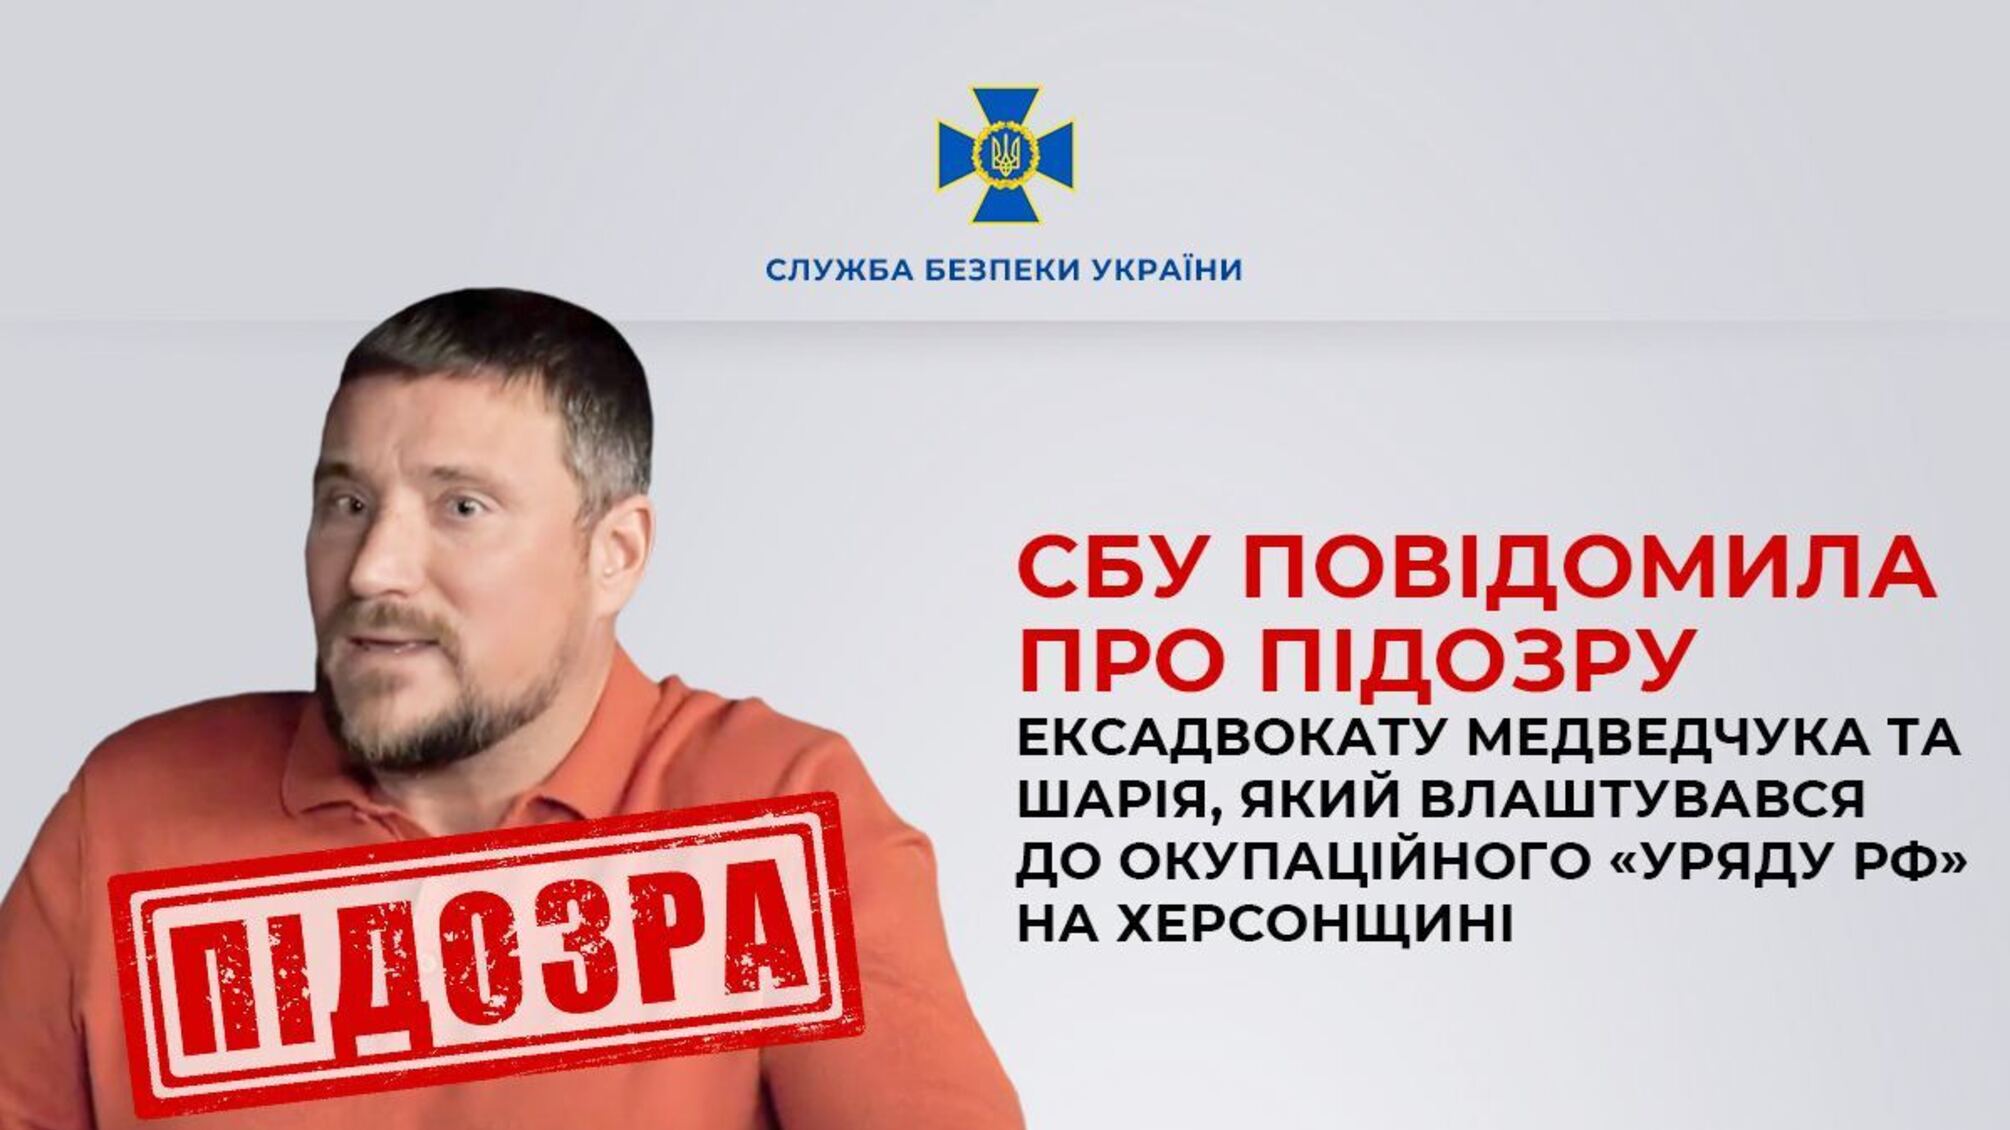 Адвокат Рыбин попался на крючок СБУ: защитнику Медведчука и Шария объявили о подозрении